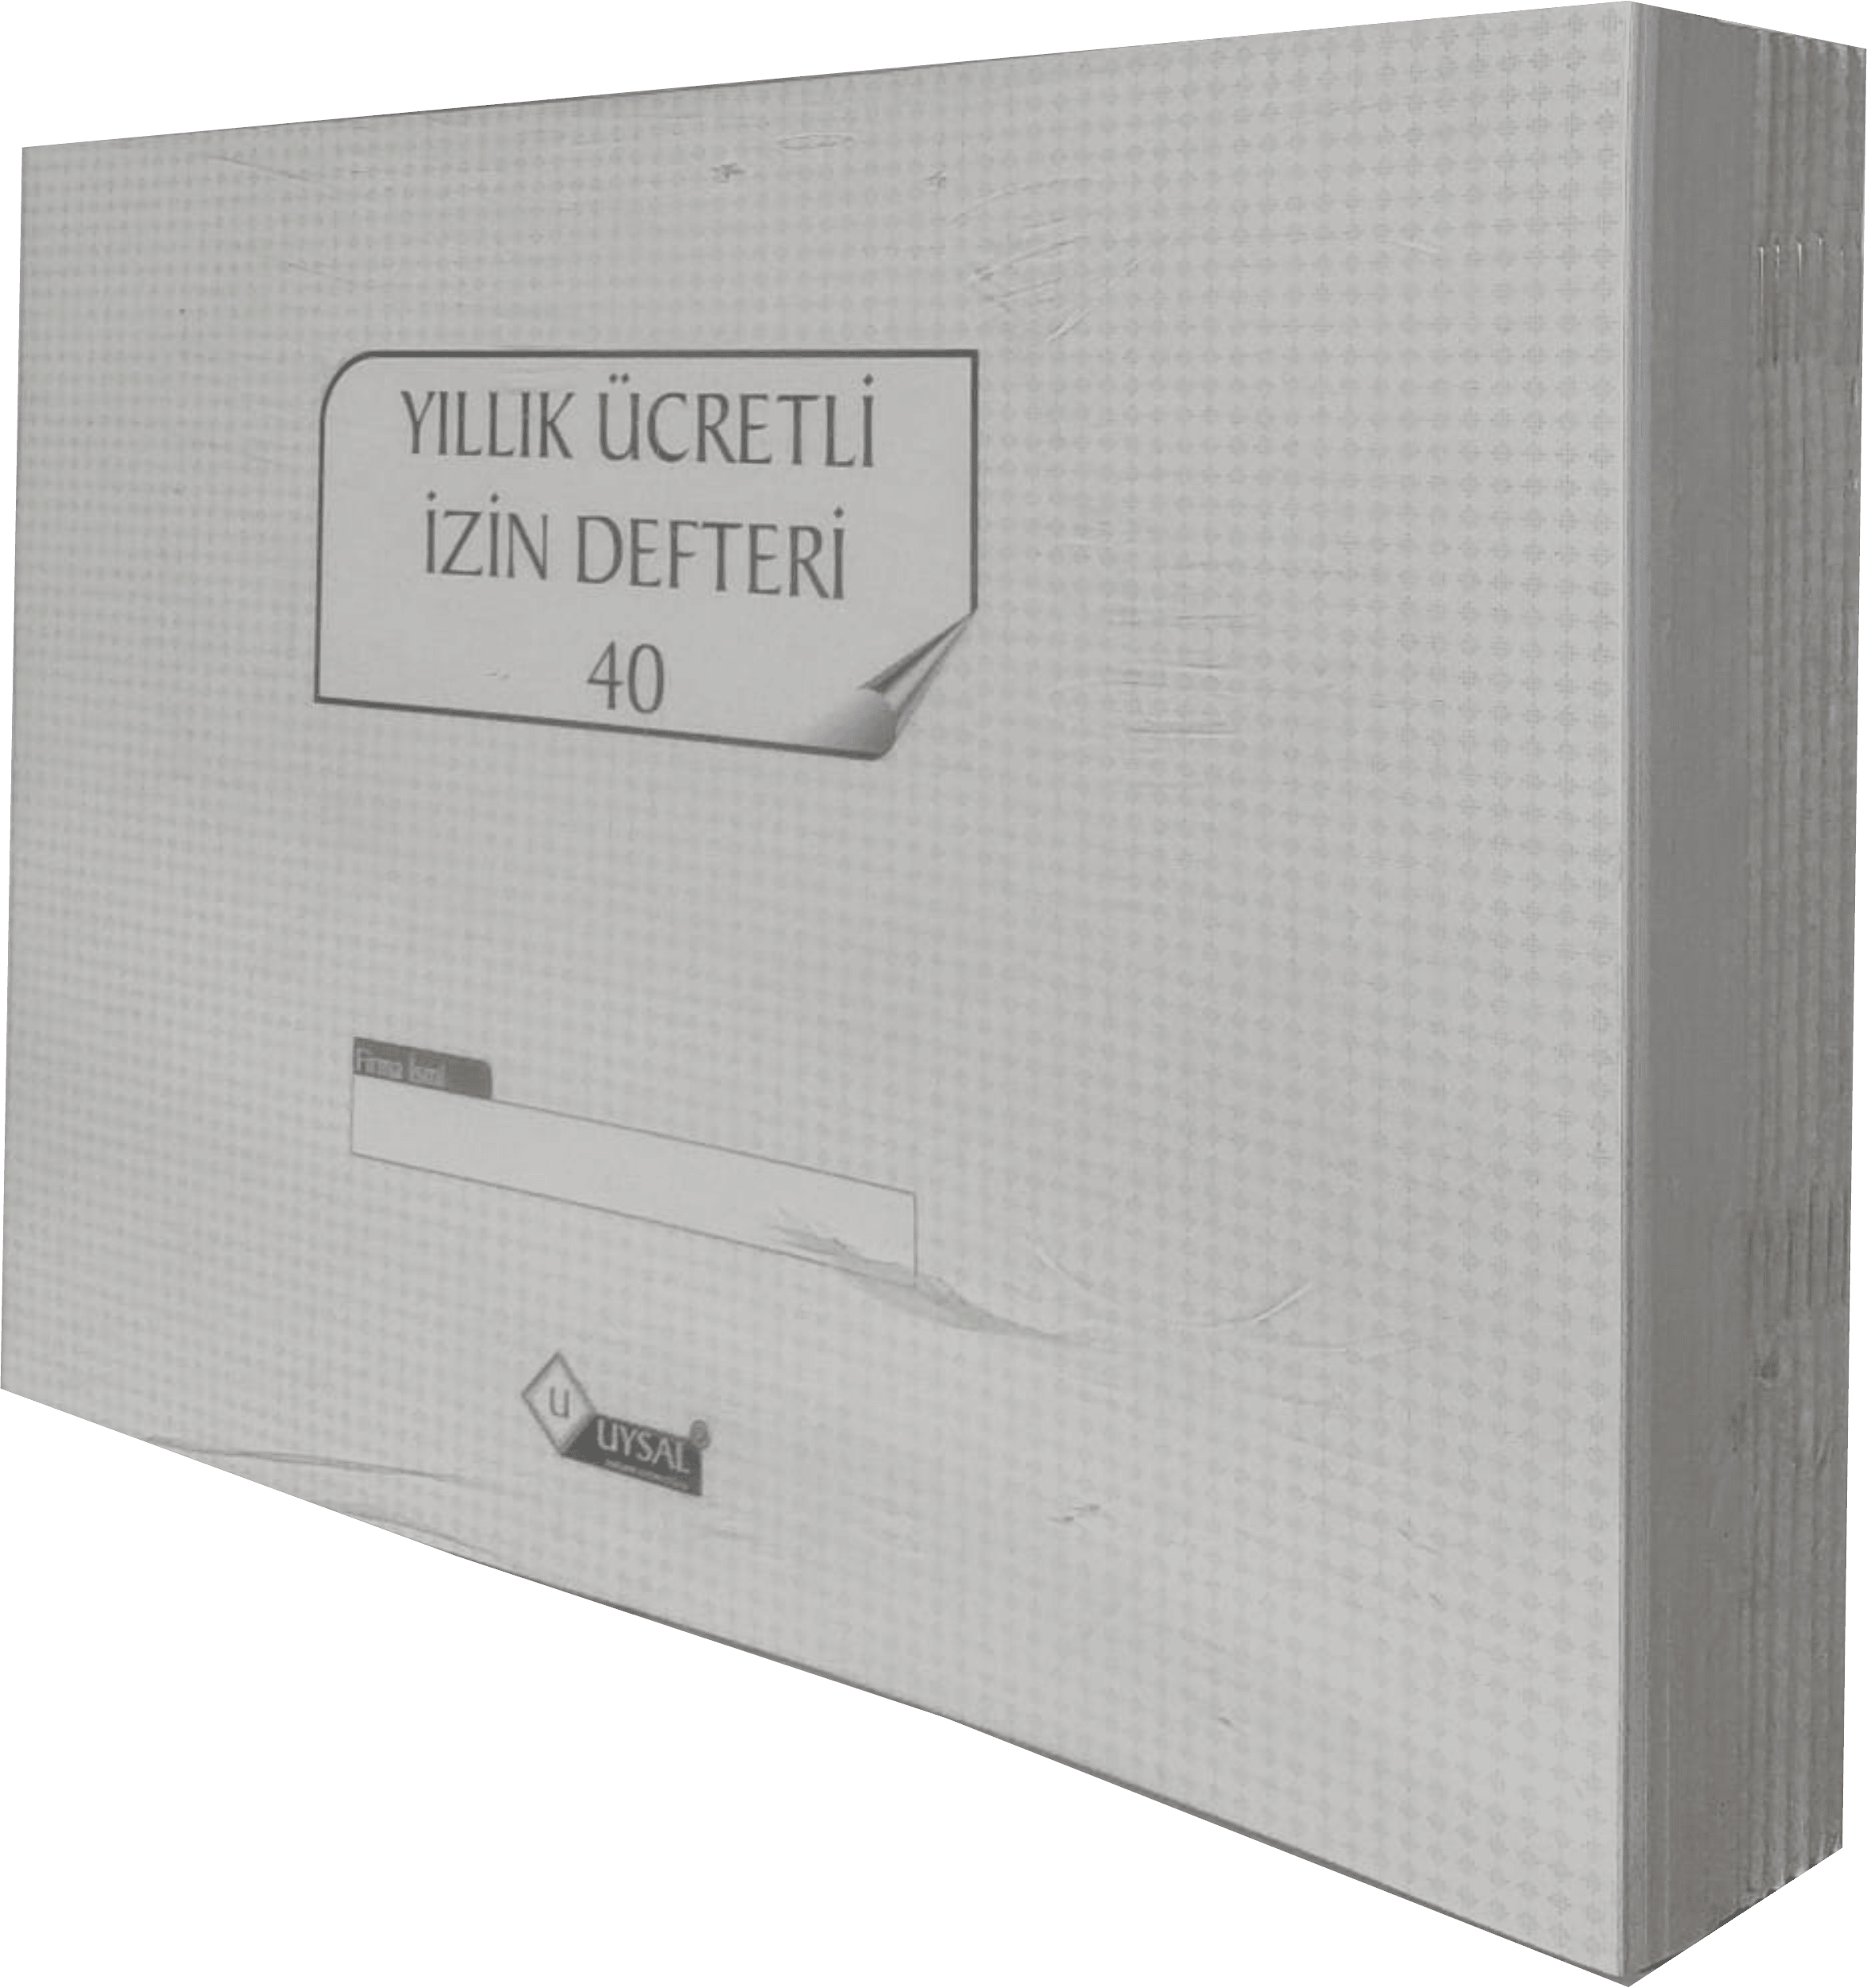 UYSAL Yıllık Ücretli İzin Defteri 40 Yaprak(80 SAYFA) Numaralı 10 Lu Paket Karton Kapak